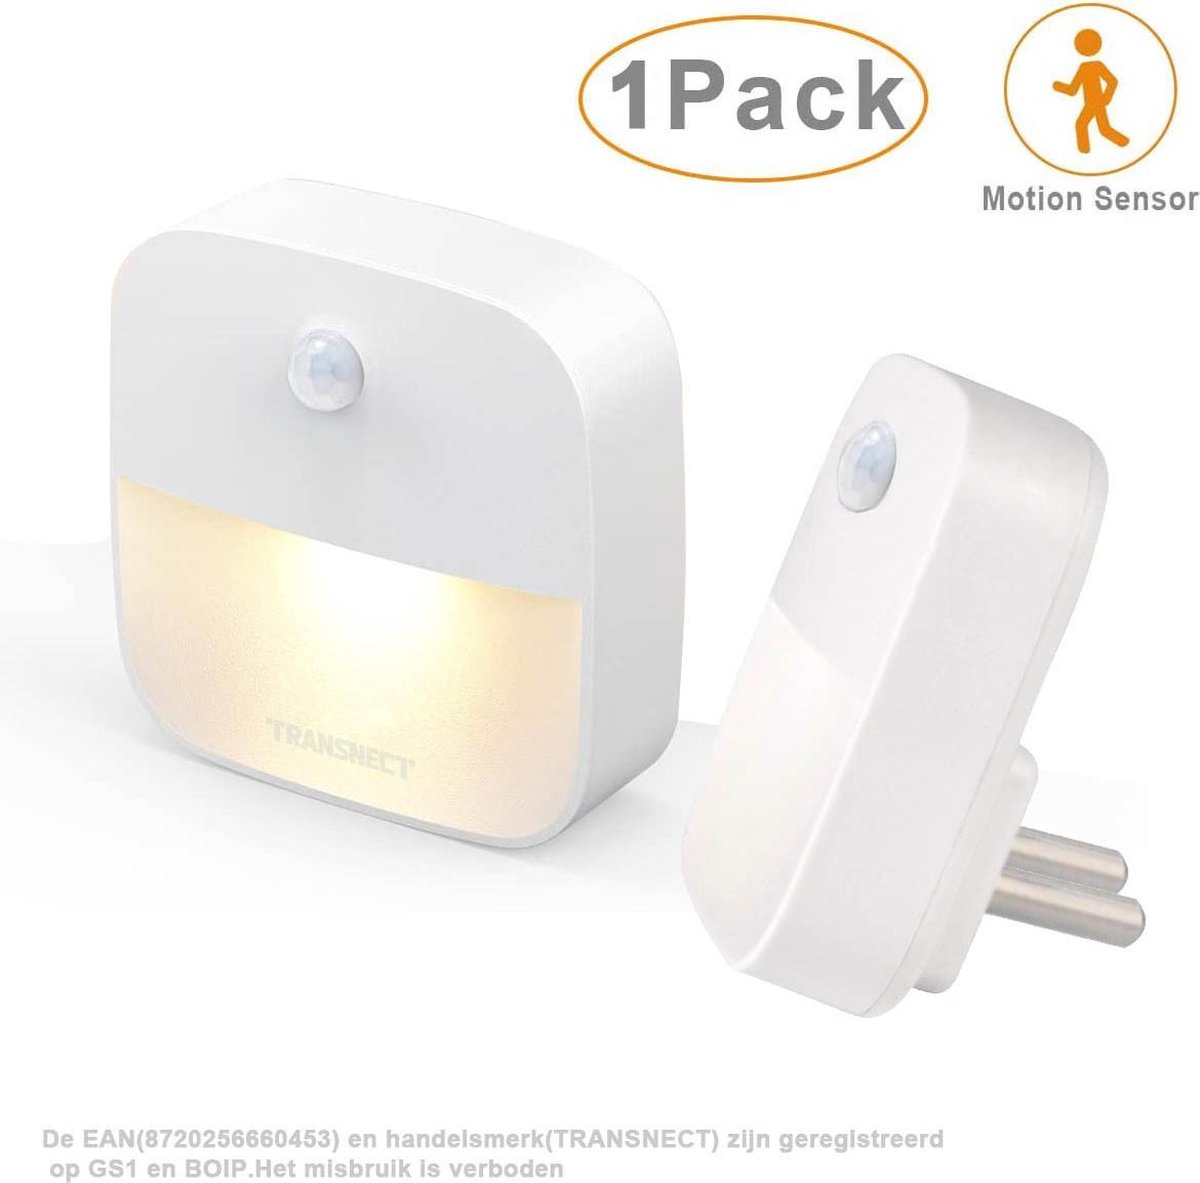 Nachtlampje Stopcontact - Plug and Play - met Bewegingssensor - met Dag en Nacht Sensor- voor Babykamer, Slaapkamer - 1 Stuk - TRANSNECT